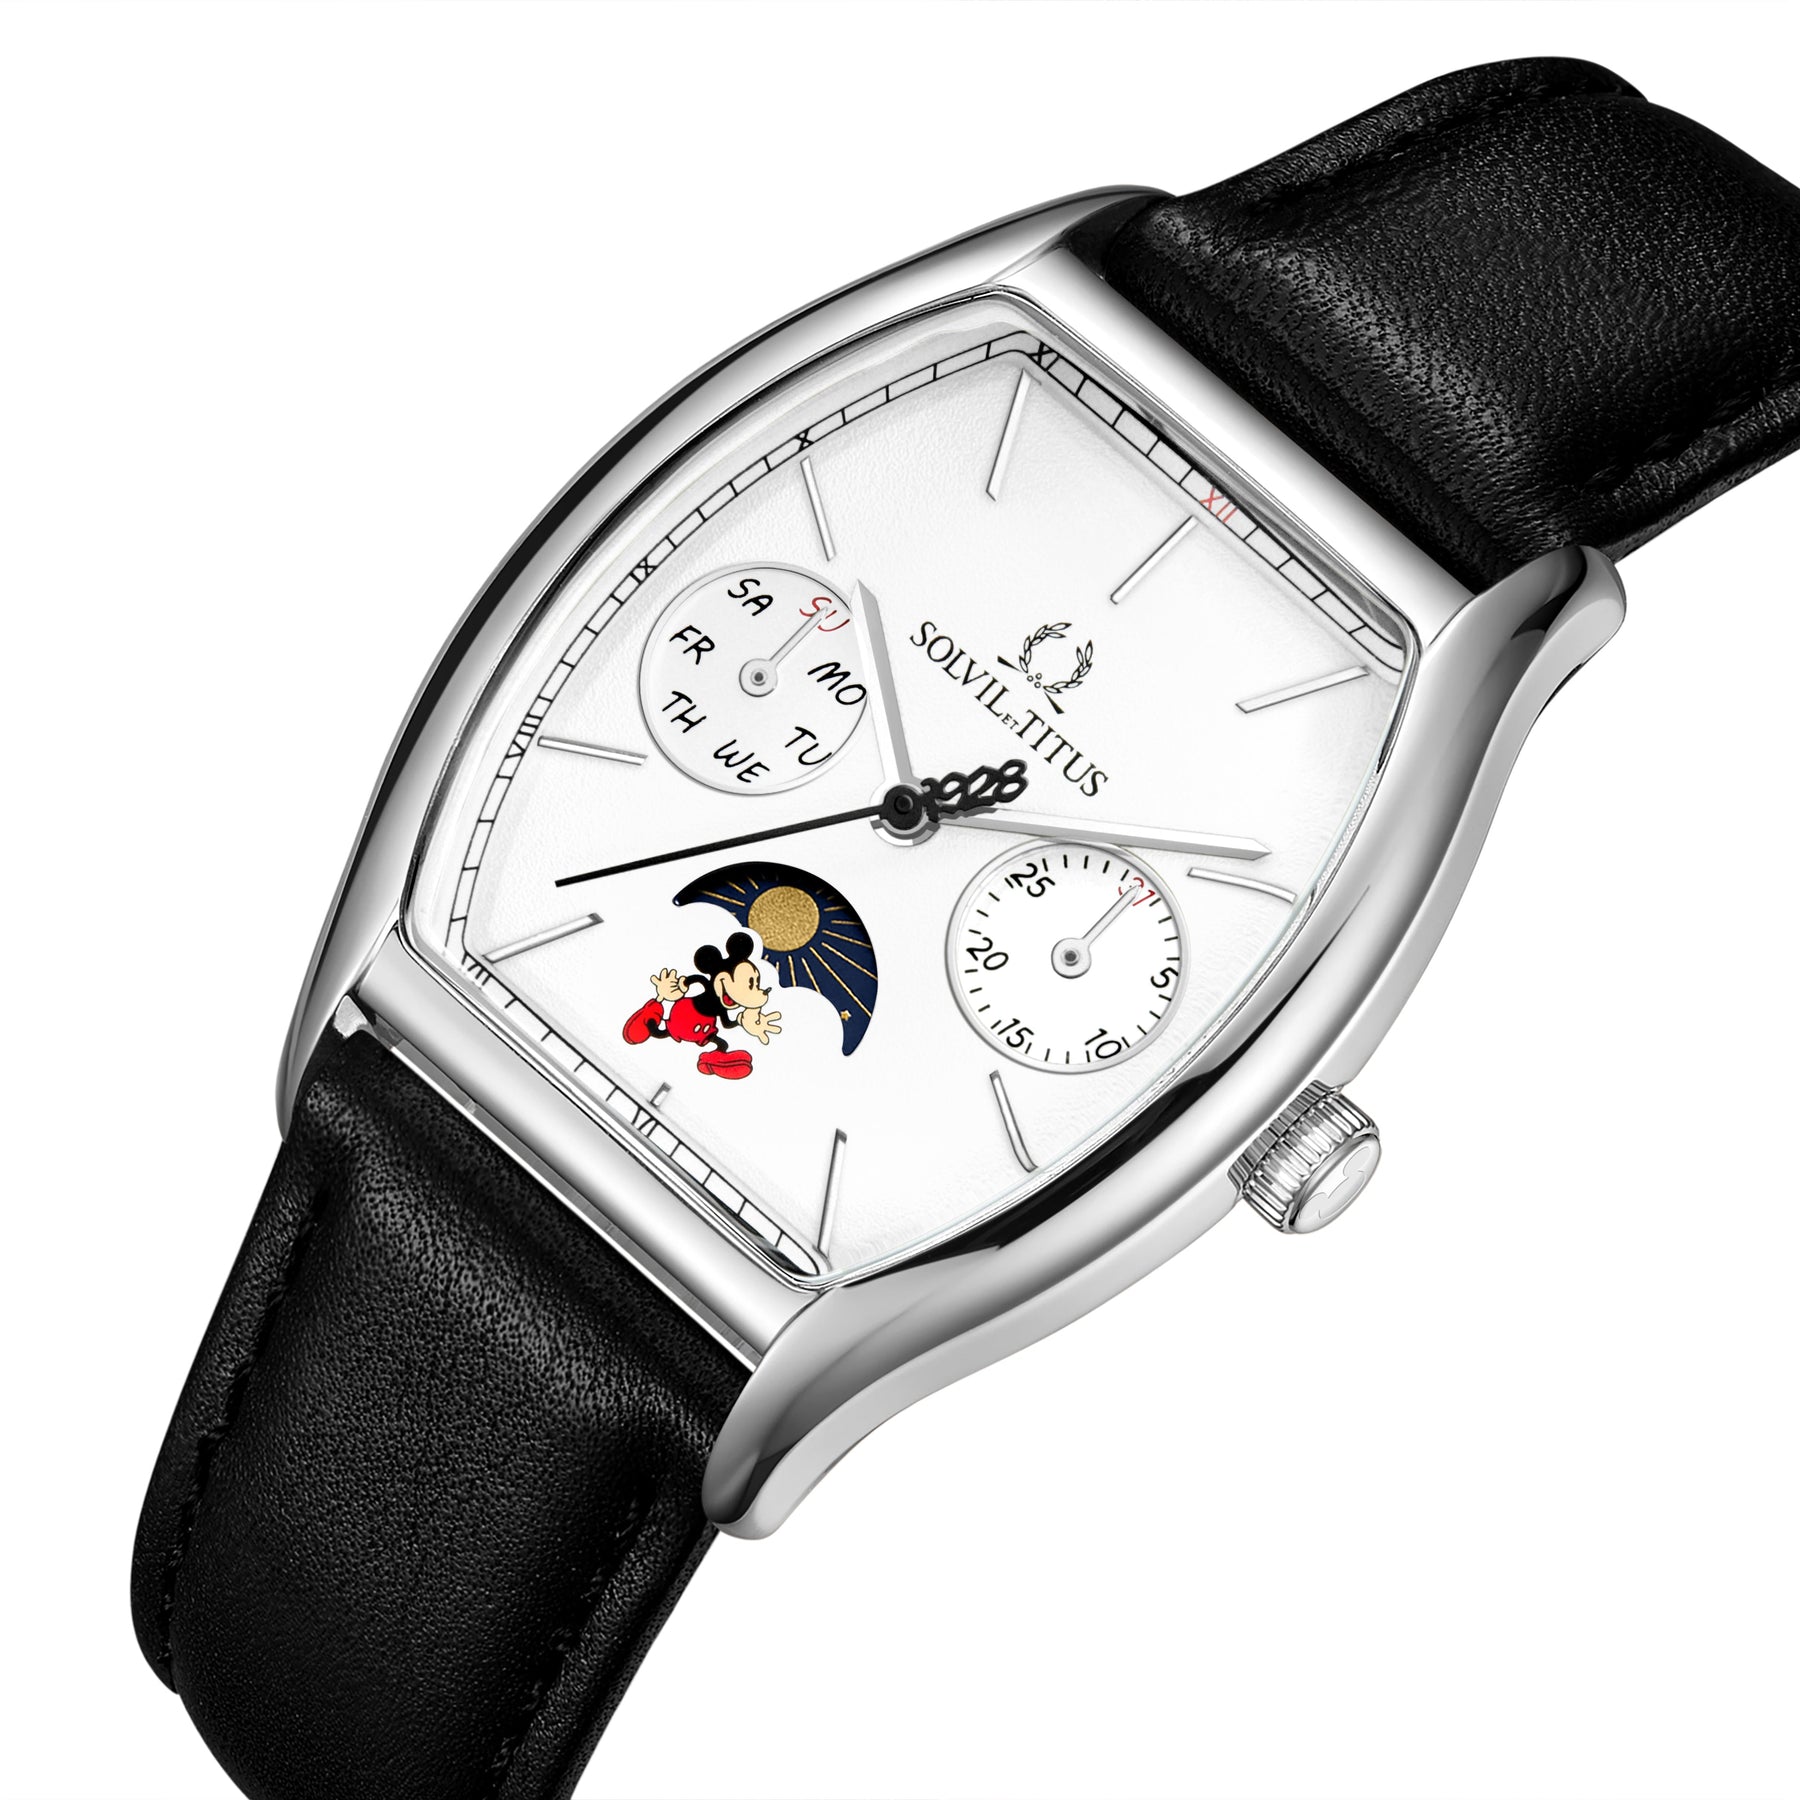 คอลเลกชัน Barista “Mickey Mouse 95th Anniversary” นาฬิกาผู้หญิง ลิมิเตดอิดิชัน เรือนสีเงิน มัลติฟังก์ชัน บอกกลางวัน-กลางคืน ระบบควอตซ์ สายหนัง ขนาดตัวเรือน 31 มม. (W06-03356-001)